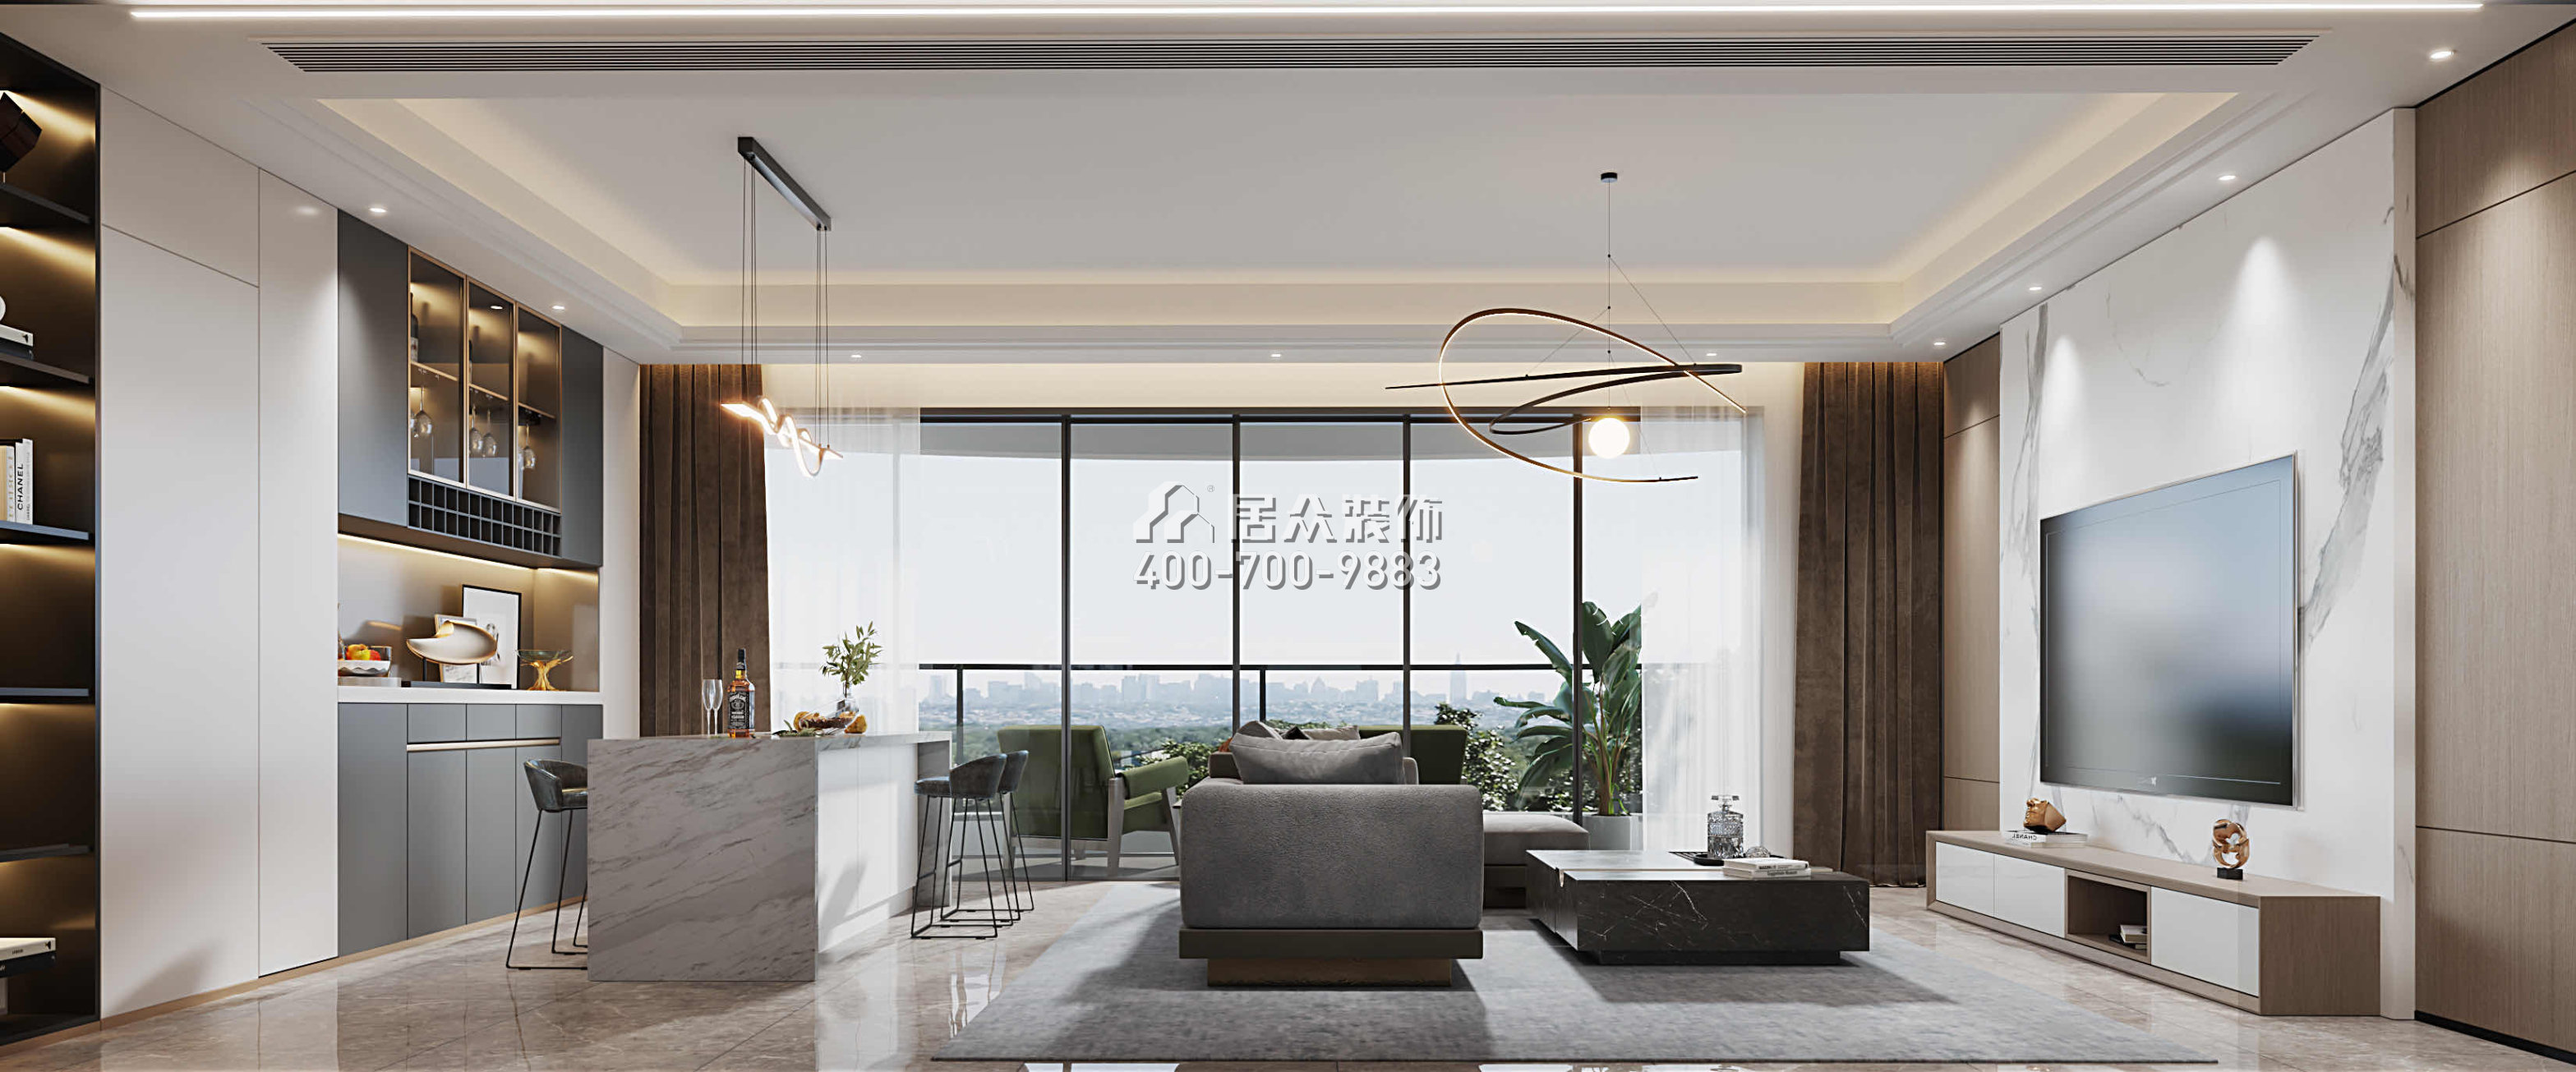 华发绿洋湾191平方米现代简约风格平层户型客厅装修效果图